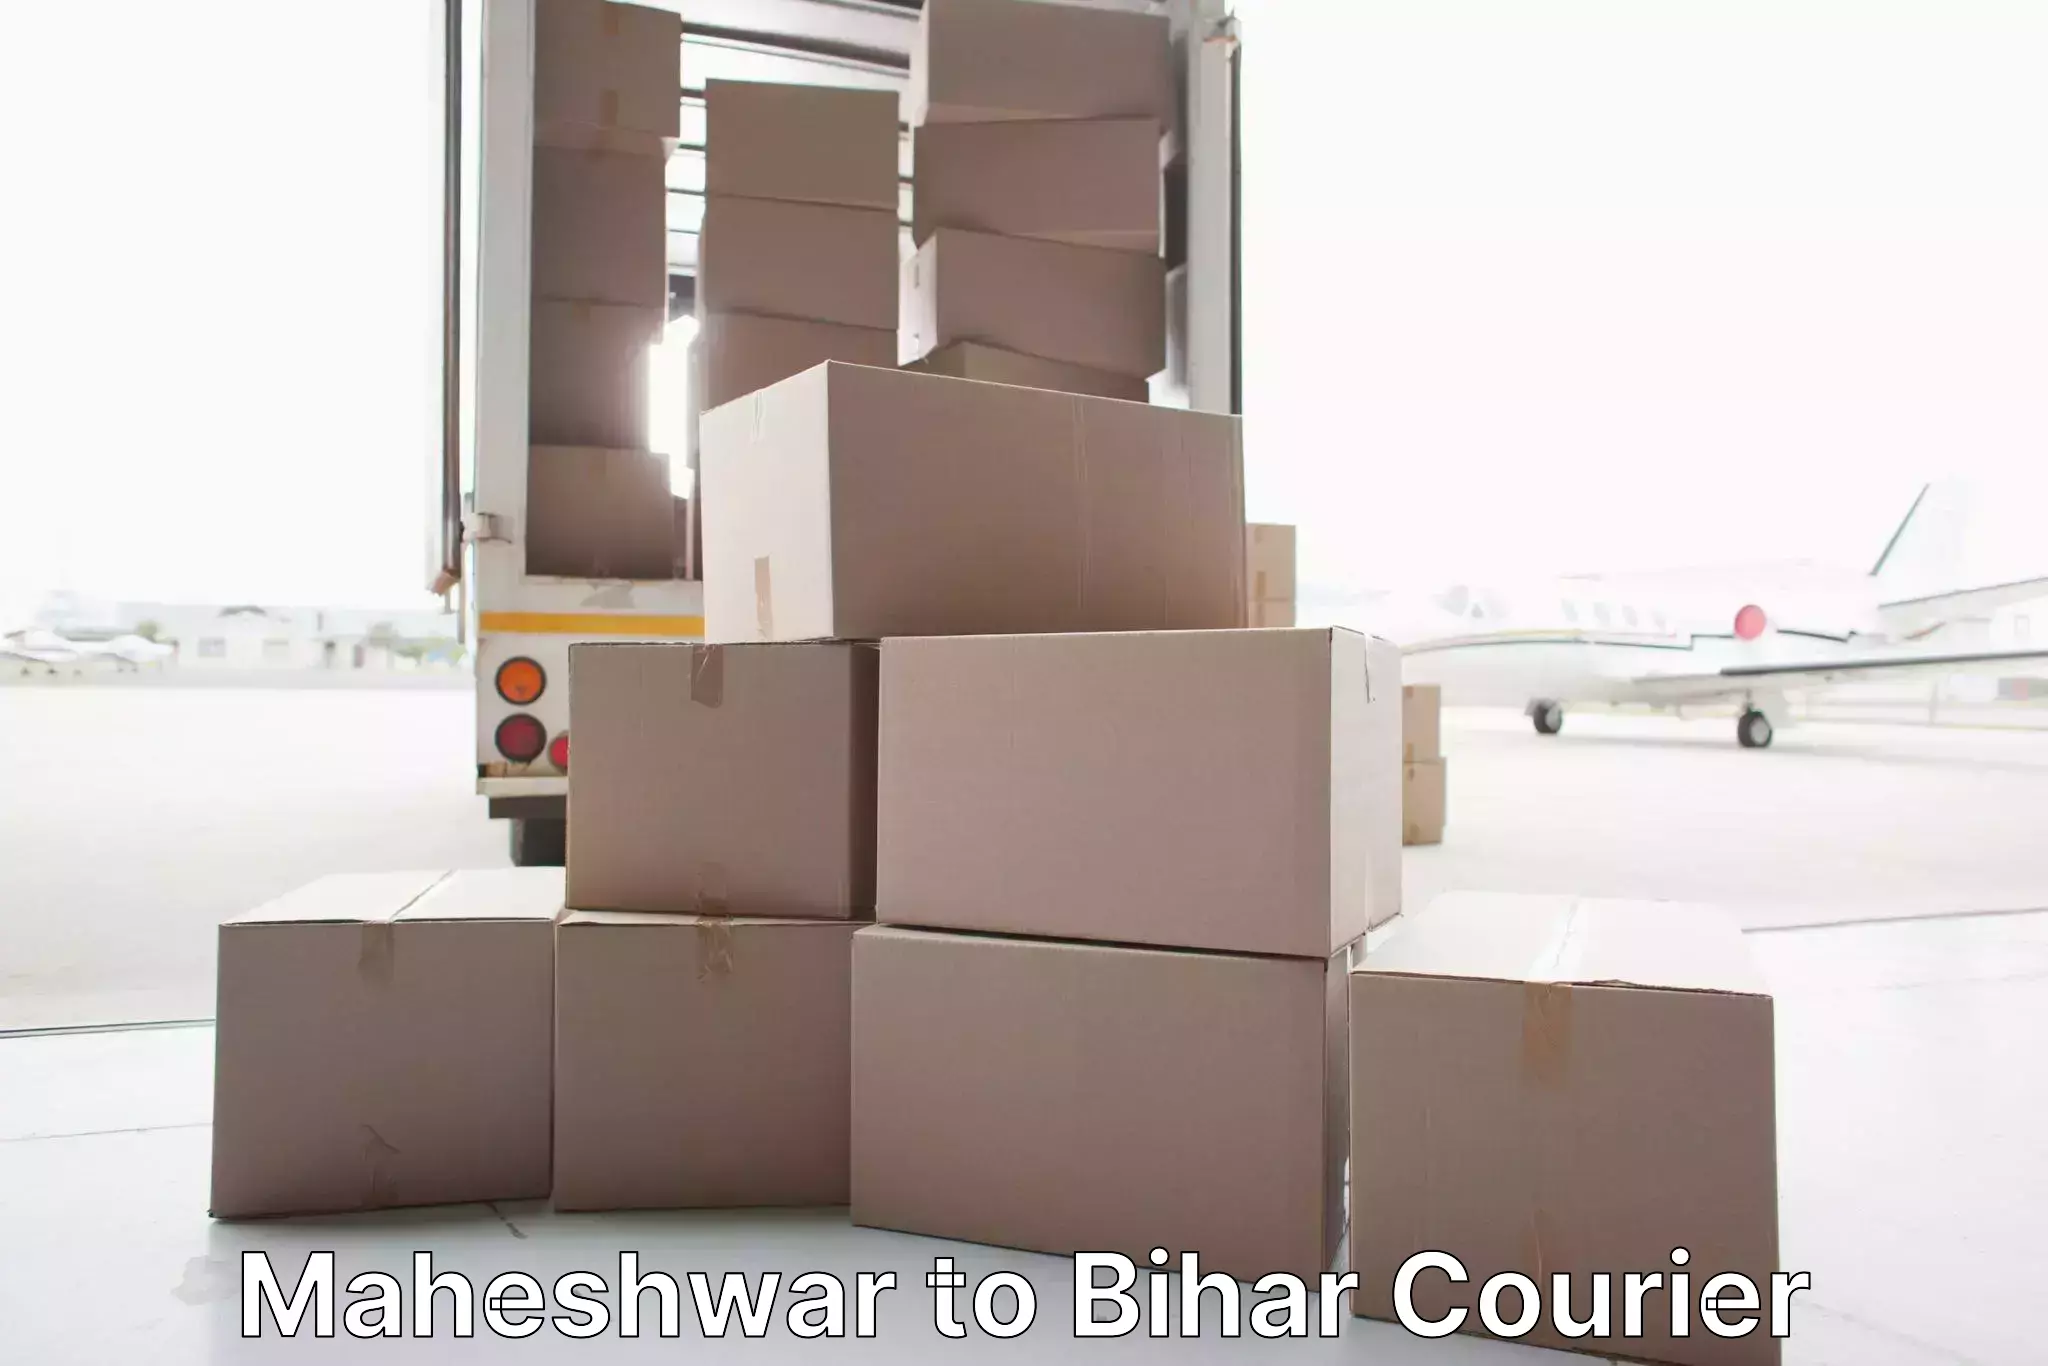 Comprehensive moving services in Maheshwar to Mashrakh